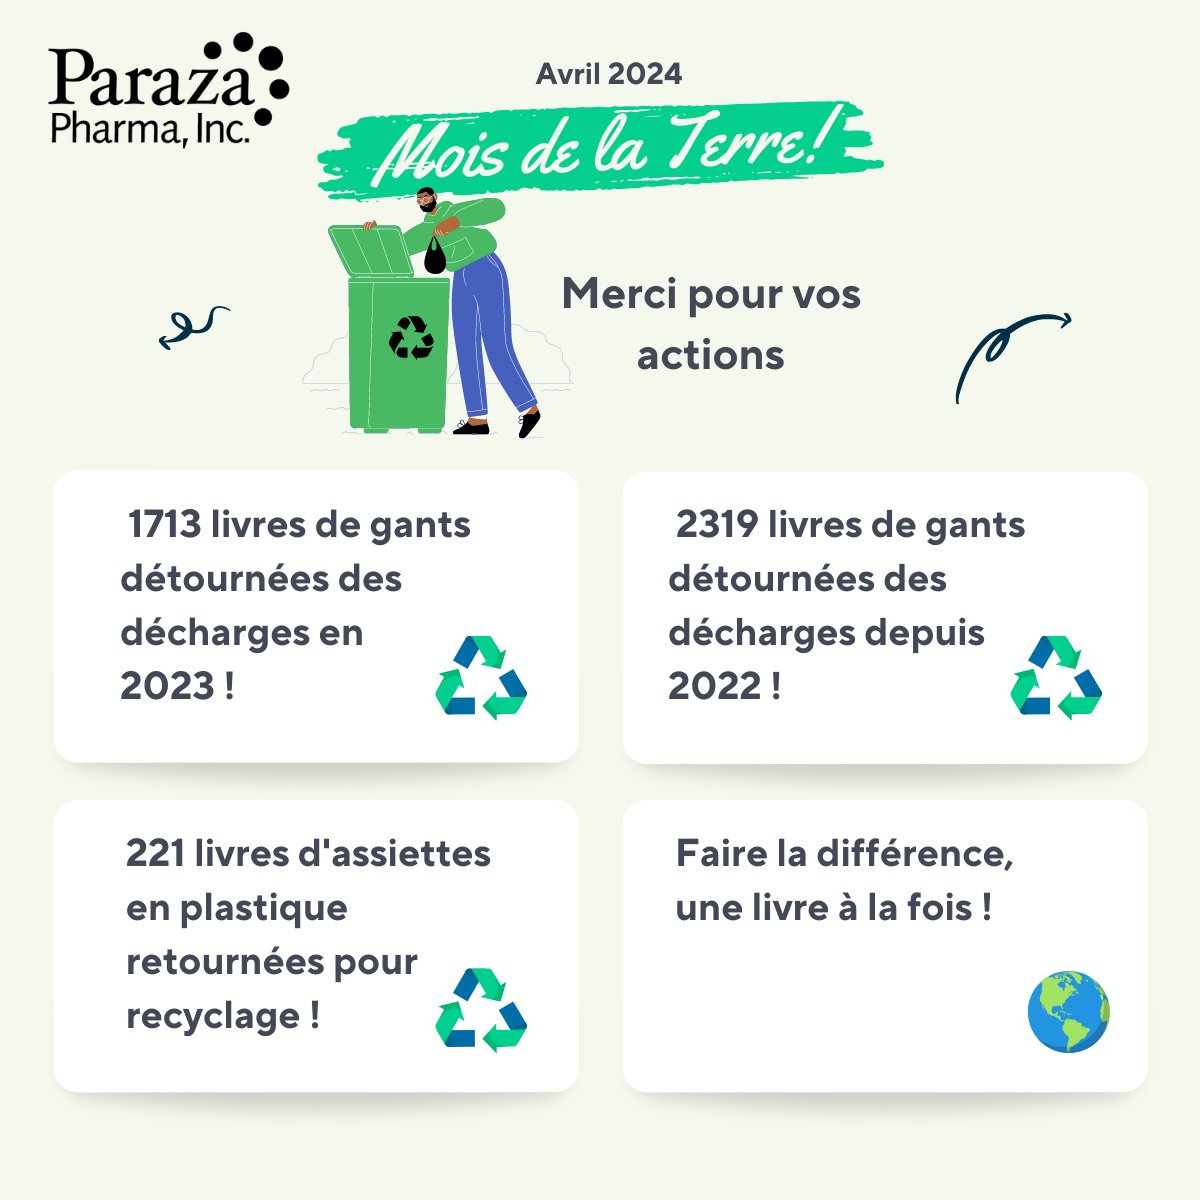 Célébrons l'engagement de notre équipe envers la durabilité ! Continuons sur cette lancée pour un avenir plus vert ! 🌍♻️ #AvrilMoisdelaTerre #Durabilité #EffortdÉquipe #InitiativesVertes